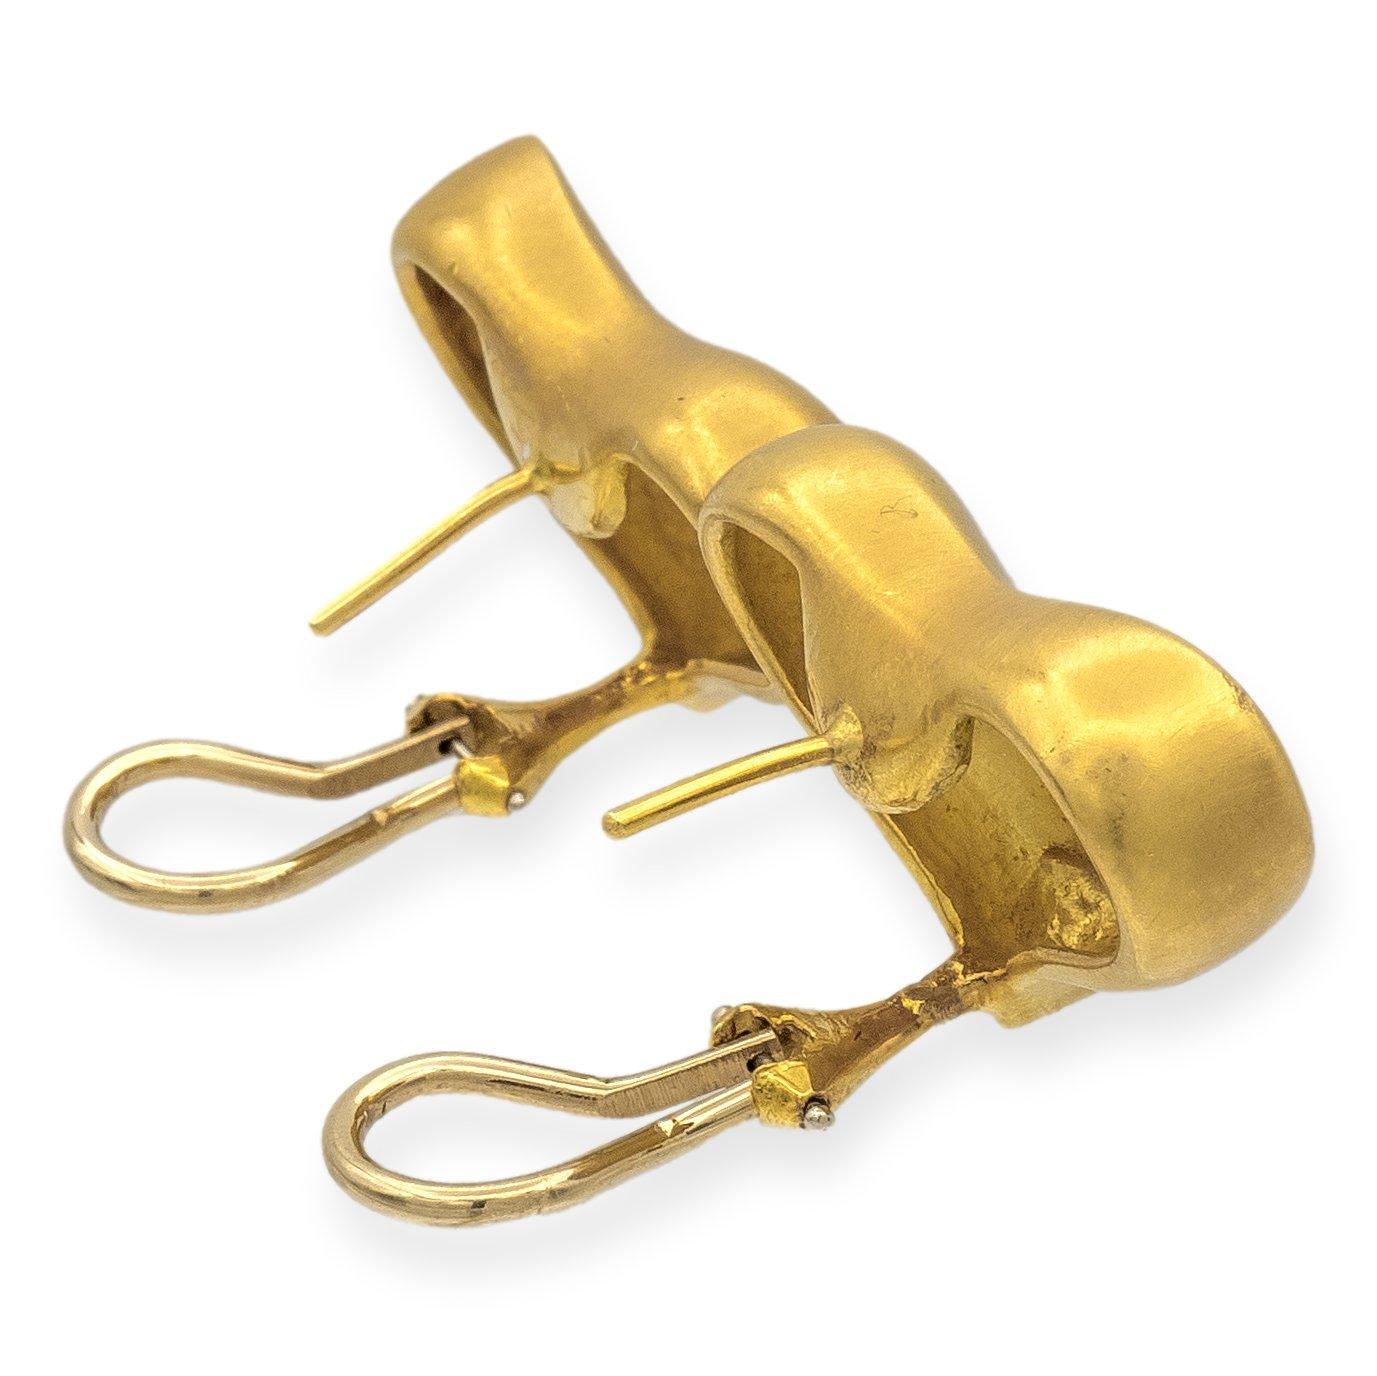 Die Vintage-Ohrringe von Angela Cummings aus dem Jahr 1985 sind aus 18-karätigem Gelbgold gefertigt und mit Herzmotiven verziert. Die Ohrringe mit satinierter Goldoberfläche versprühen einen subtilen Charme. Die großzügig bemessenen Omega-Clips und